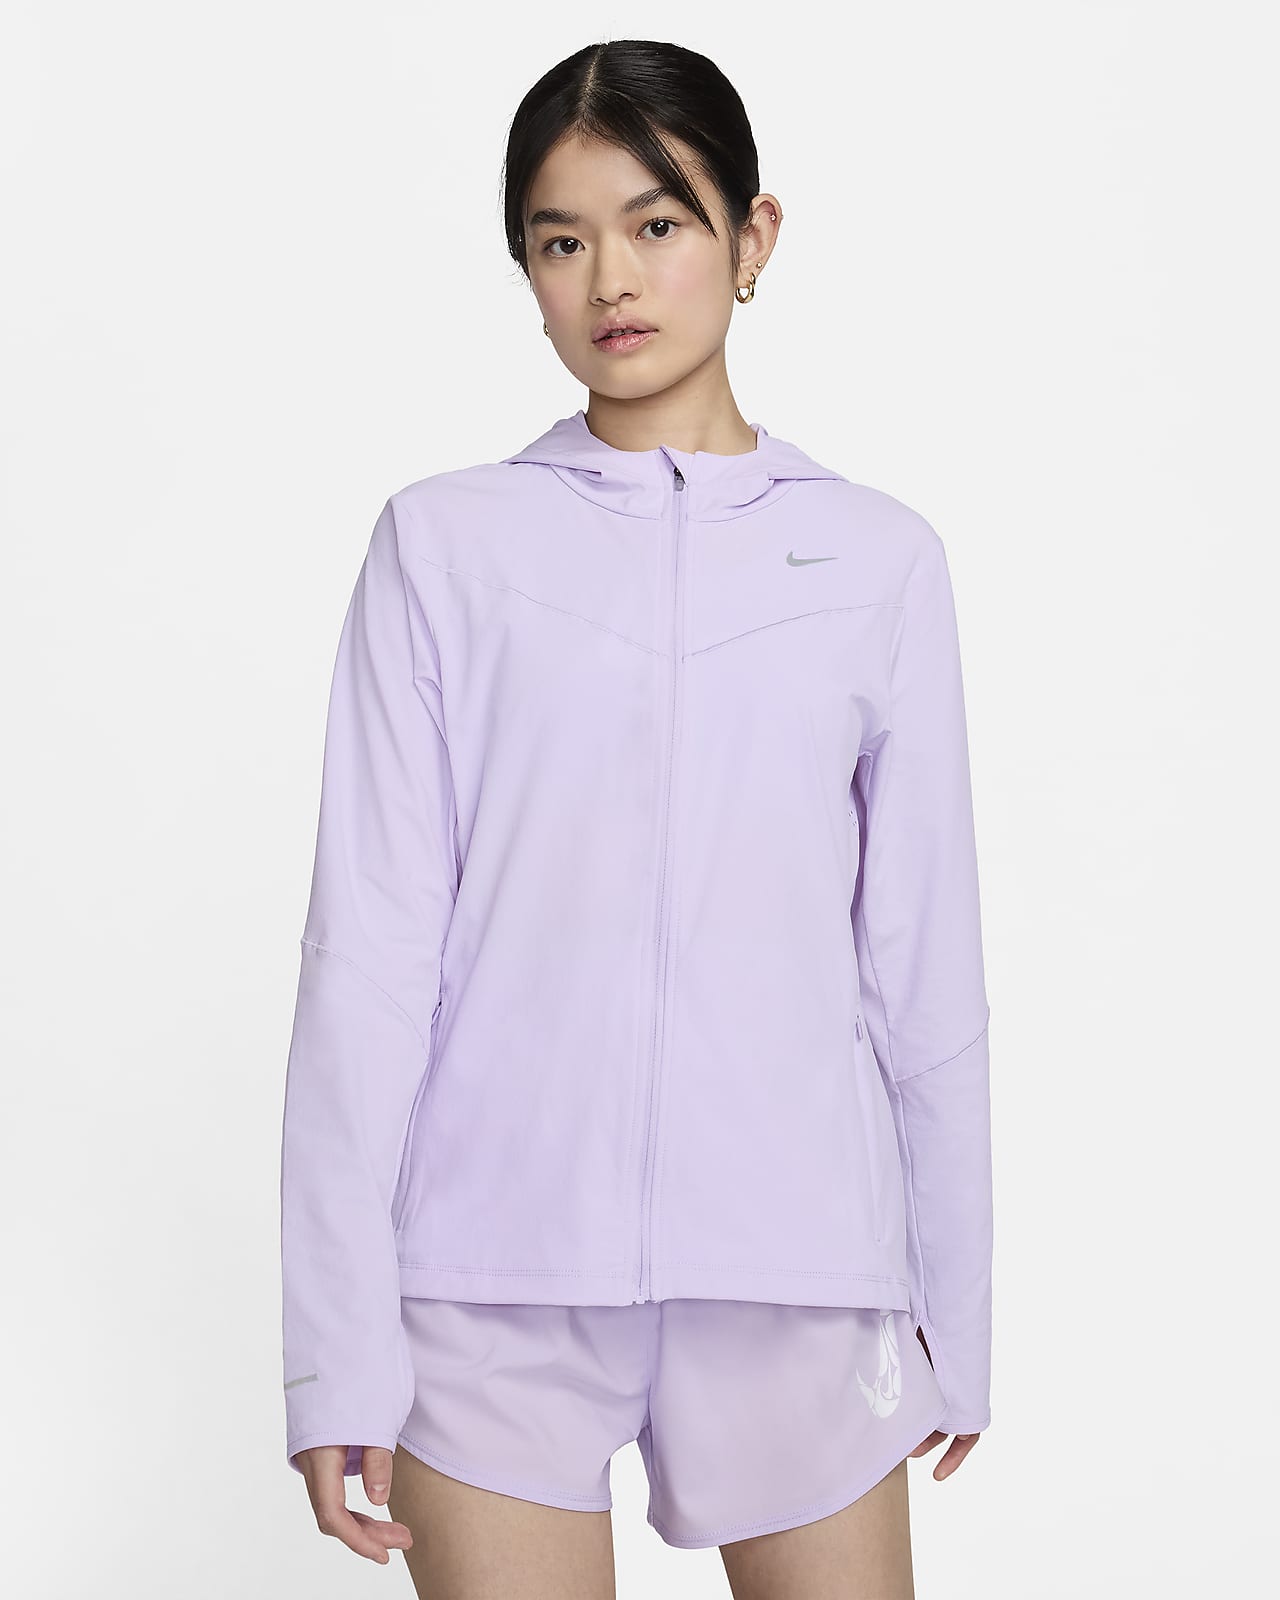 Nike Swift UV Women's Running Jacket